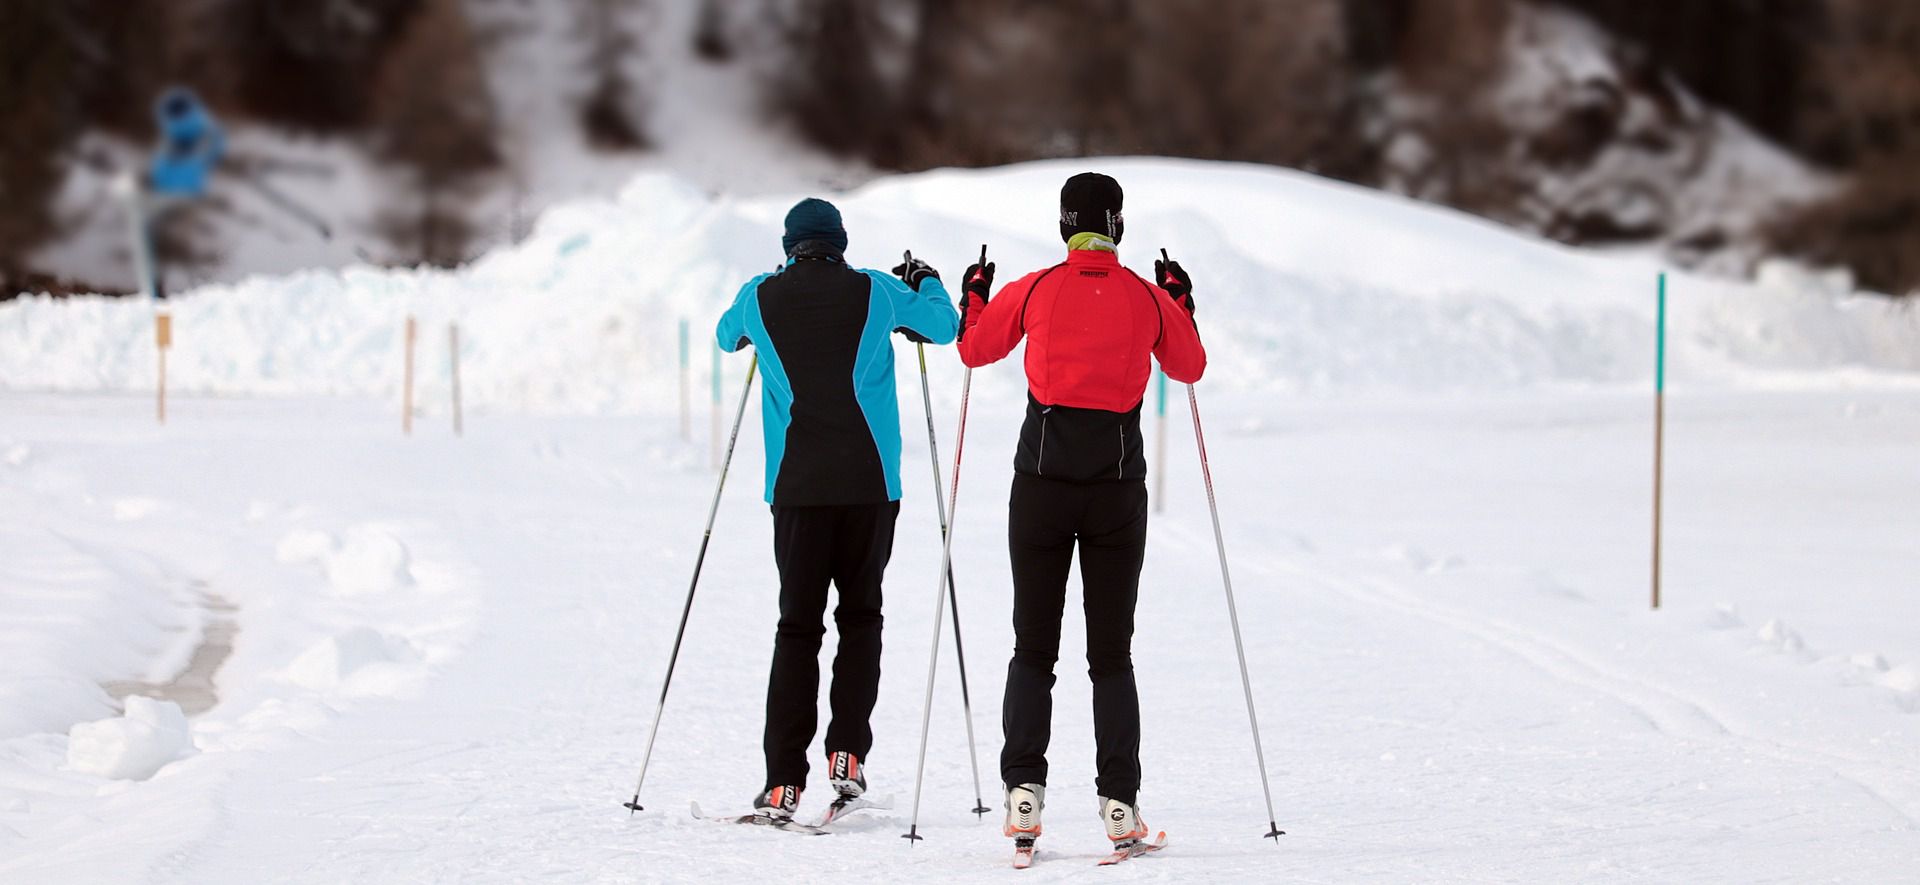 スキー旅行における持ち込みとレンタル